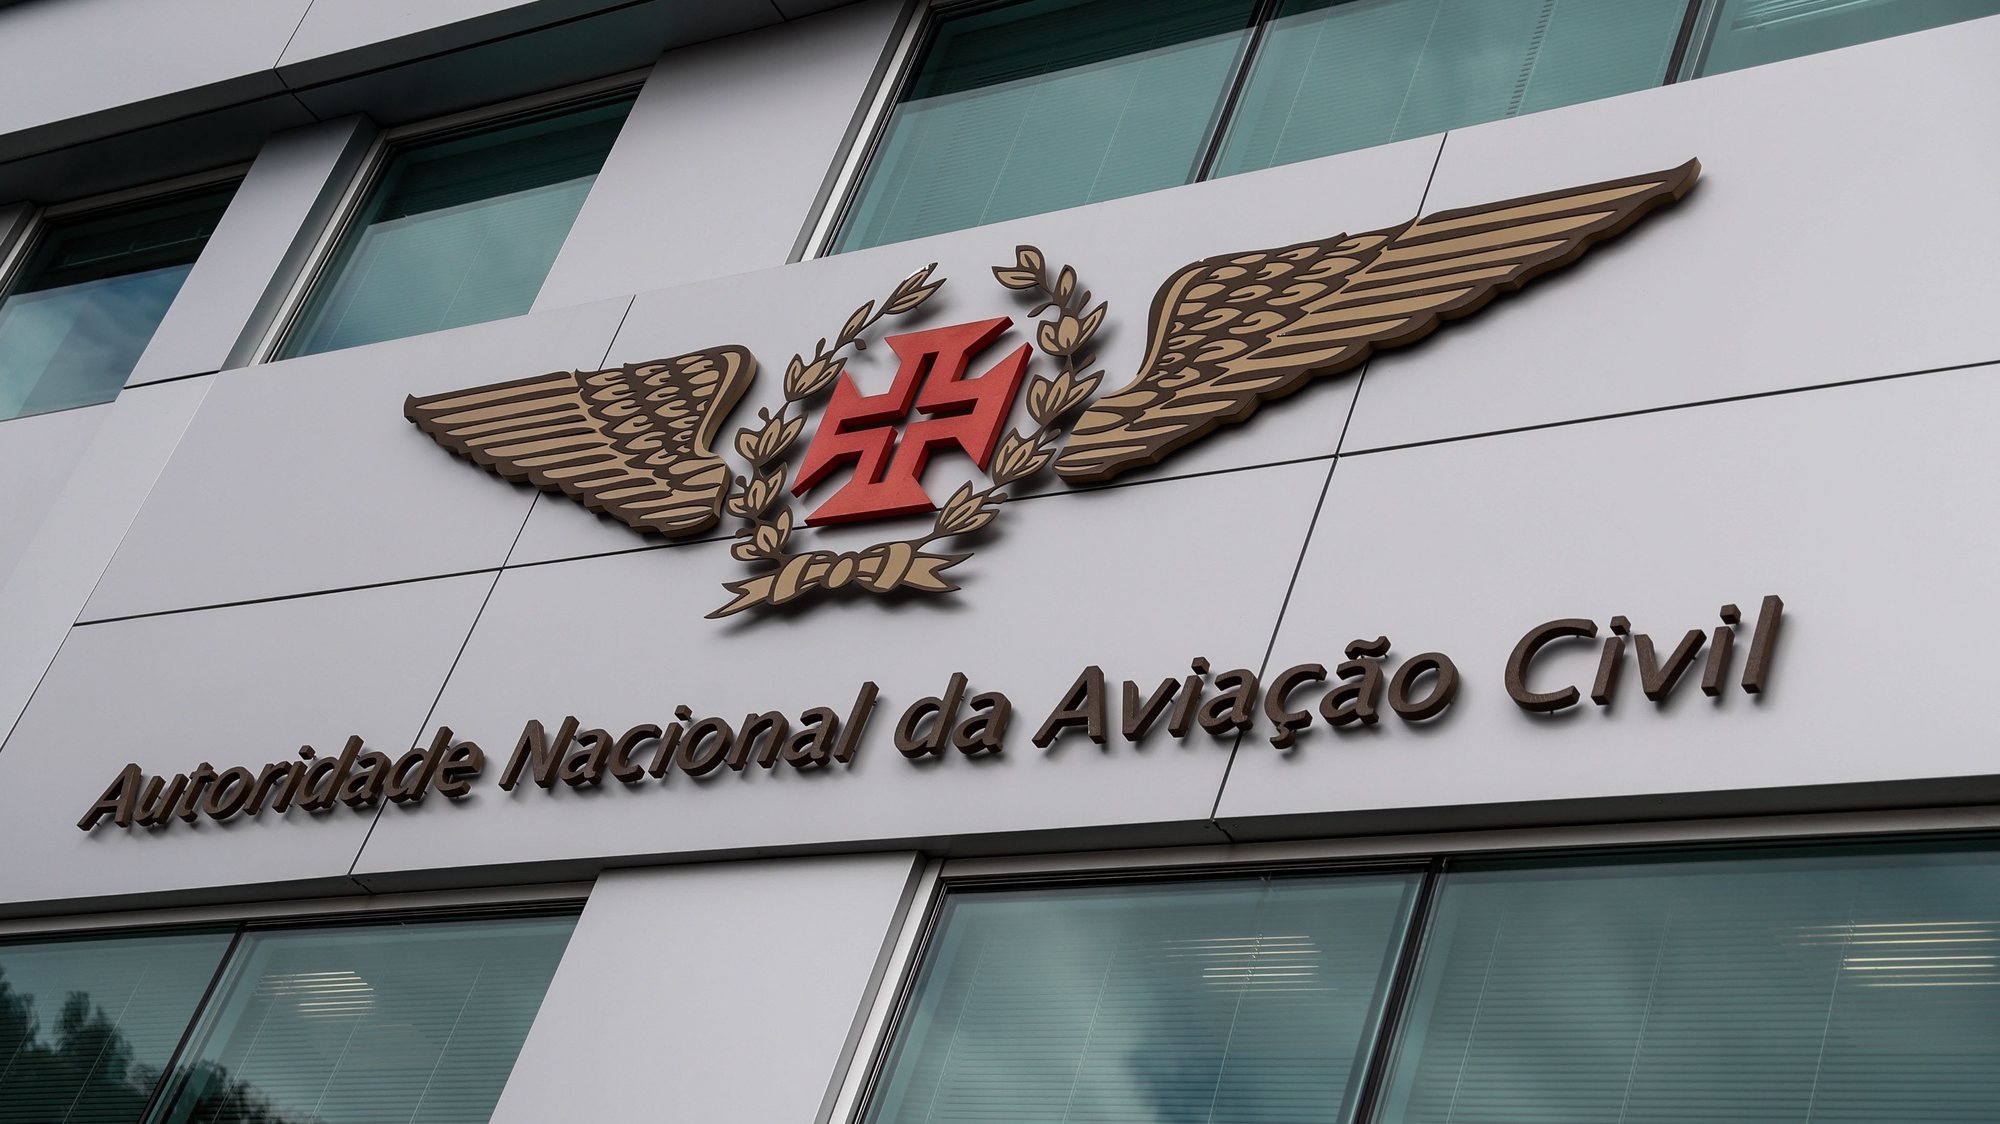 Edificio da Autoridade Nacional da Aviação Civil